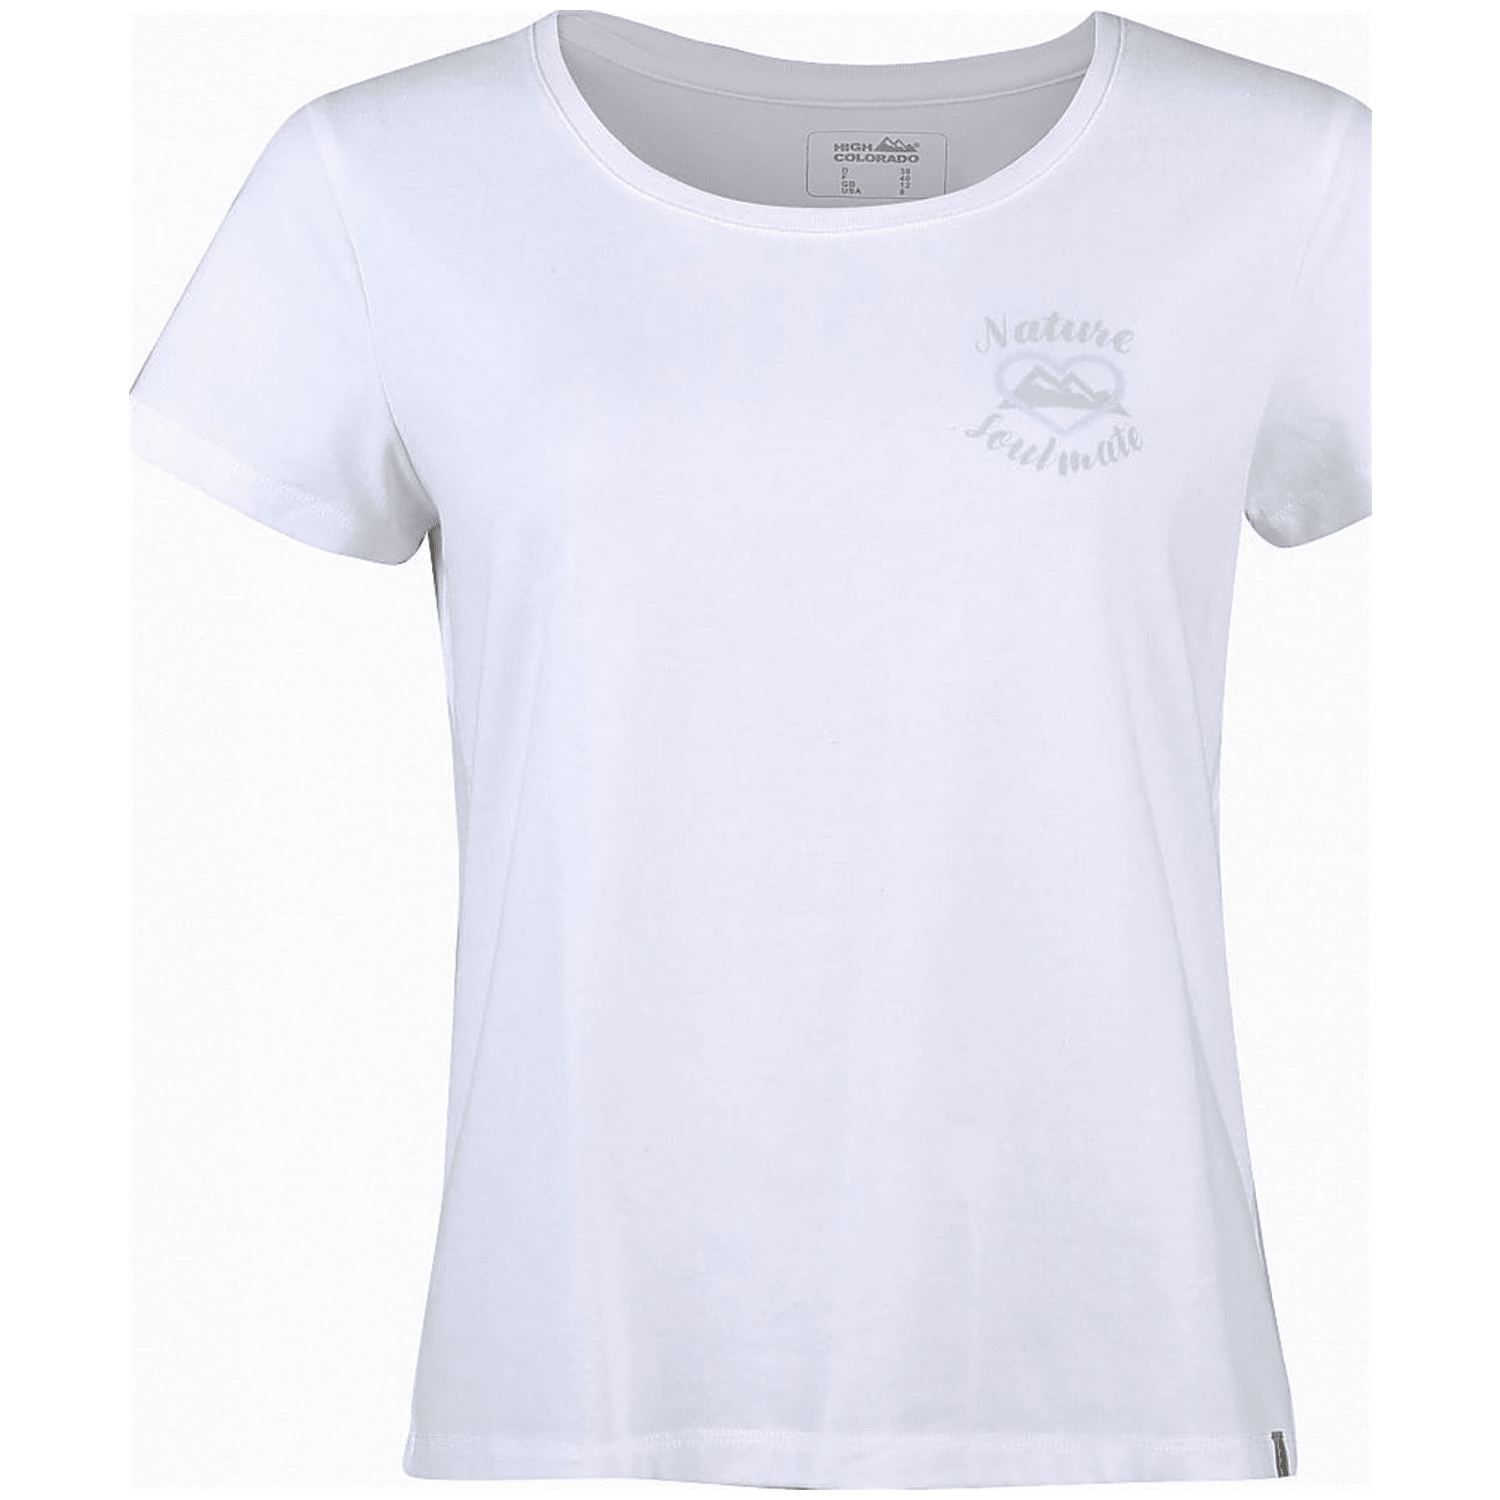 High Colorado Garda 7-L Damen T-Shirt